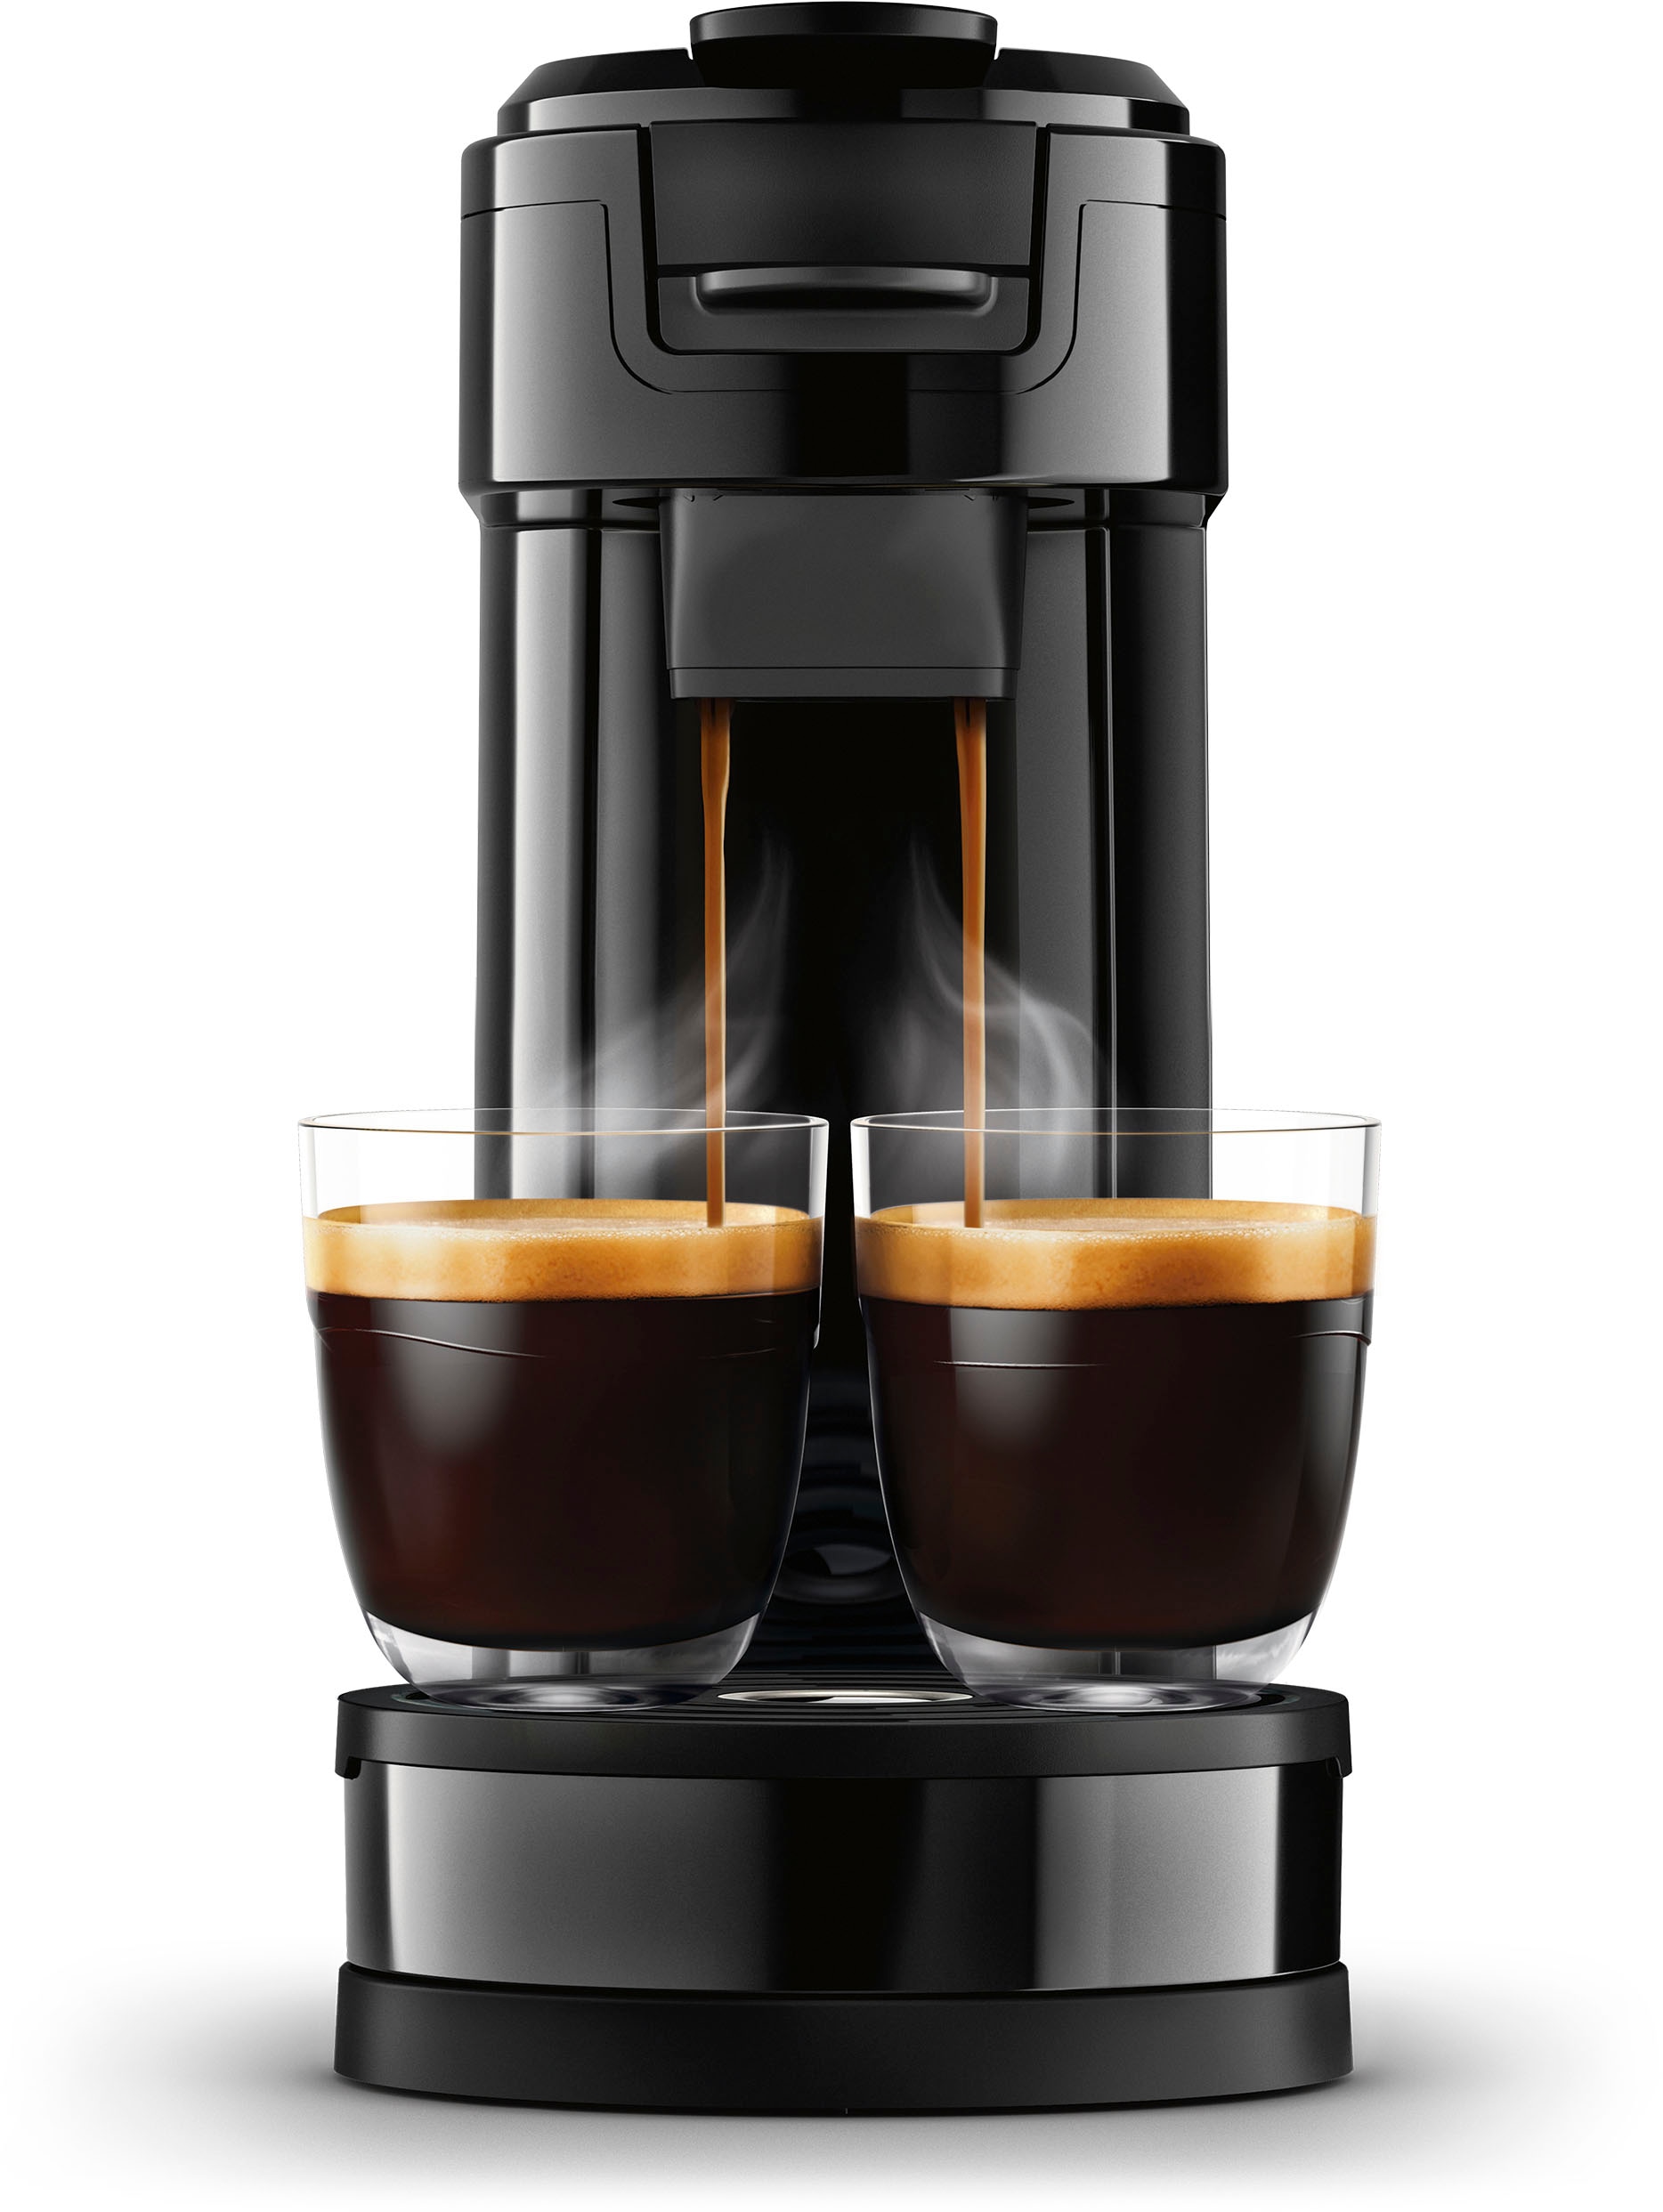 Philips Senseo Kaffeekanne, l UVP Boost Kaffeepaddose Crema online bestellen Technologie«, Kaffeepadmaschine Kaffee Plus, Wert Plastik, 1 inkl. »Switch 26% recyceltem €9,90 HD6592/64